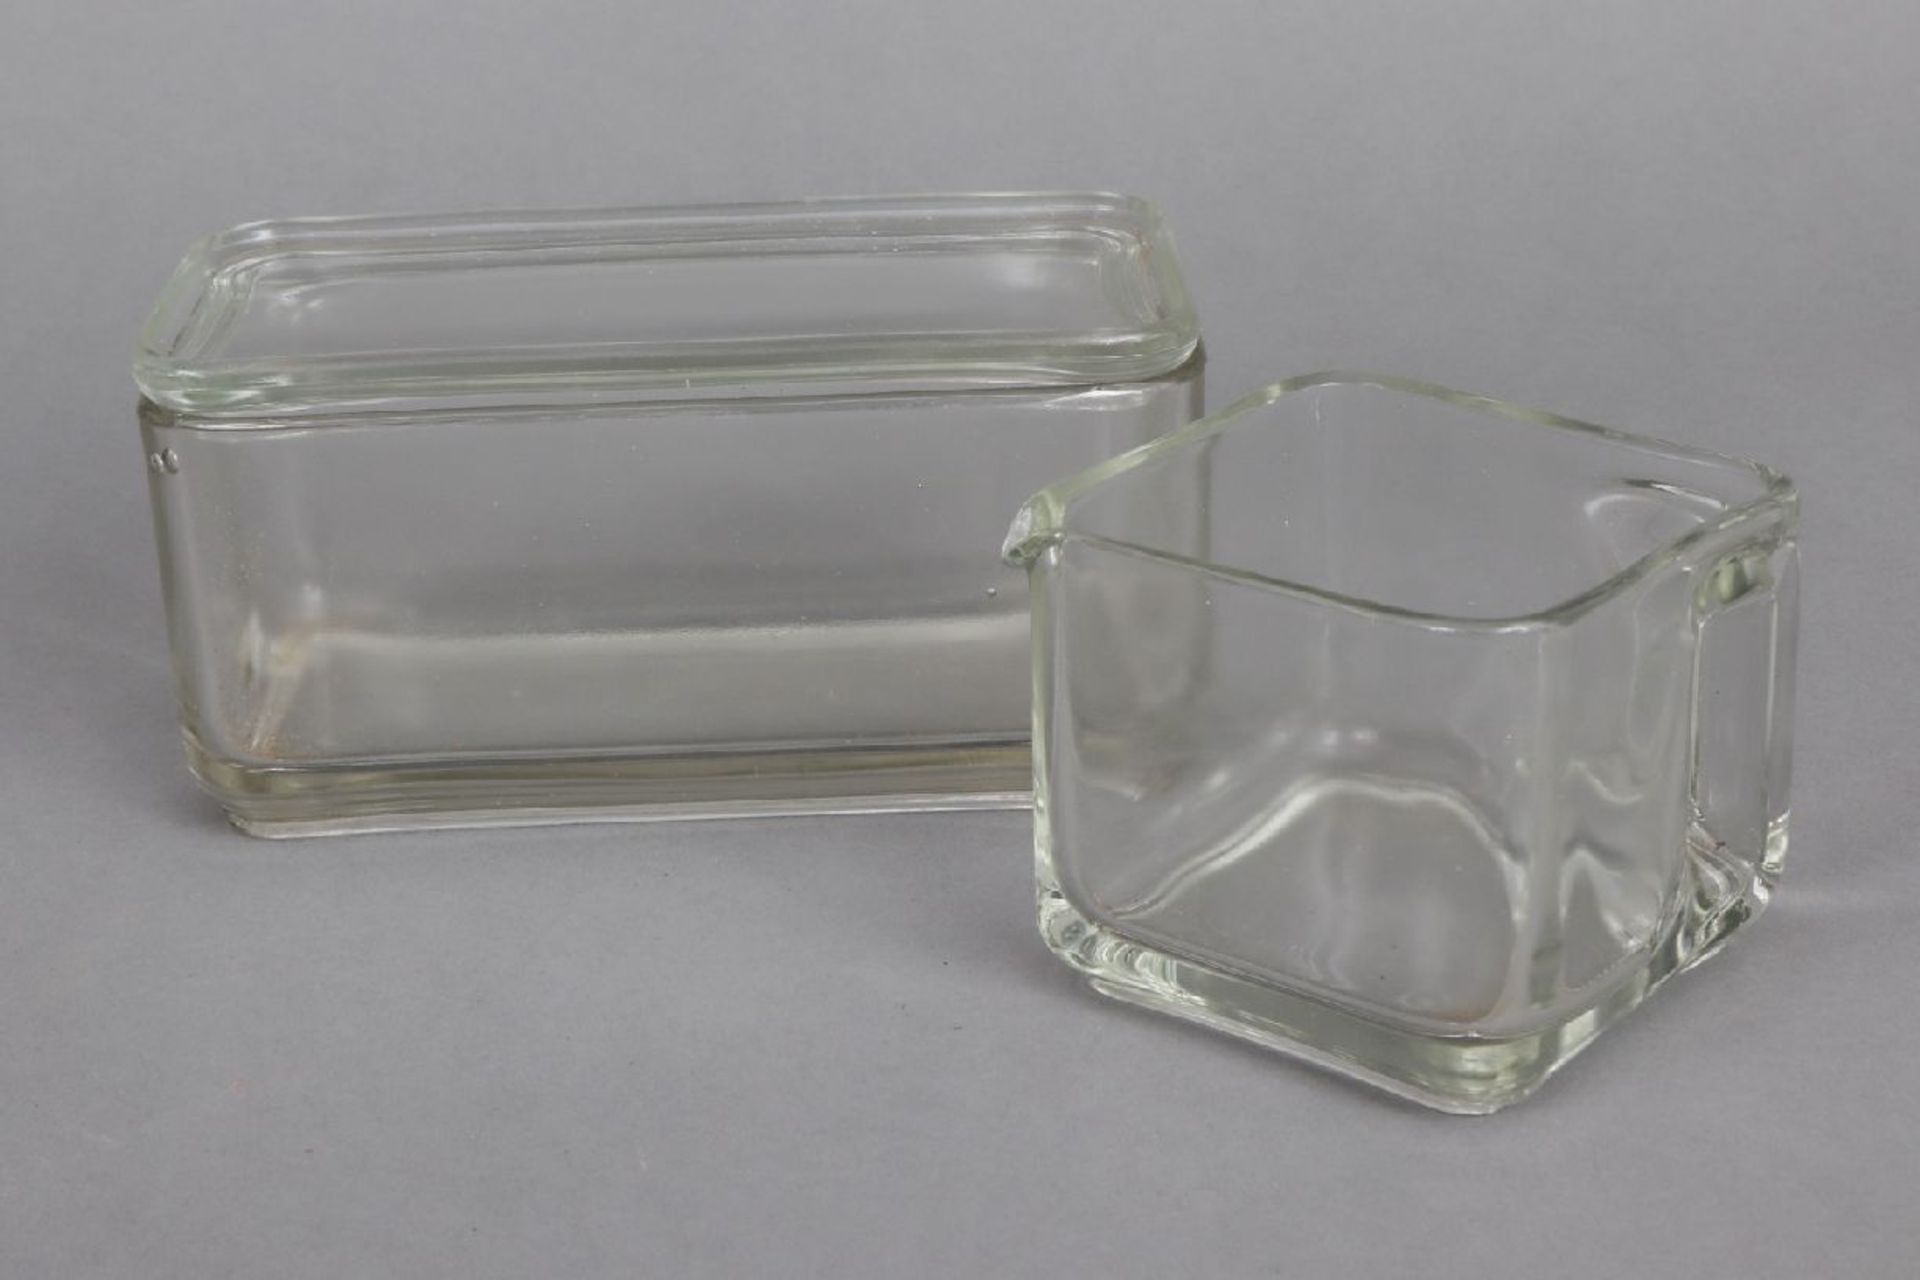 2 Teile WAGENFELD Kubus VorratsgeschirrHersteller VLG (vereinigte Lausitzer Glaswerke), Entwurf